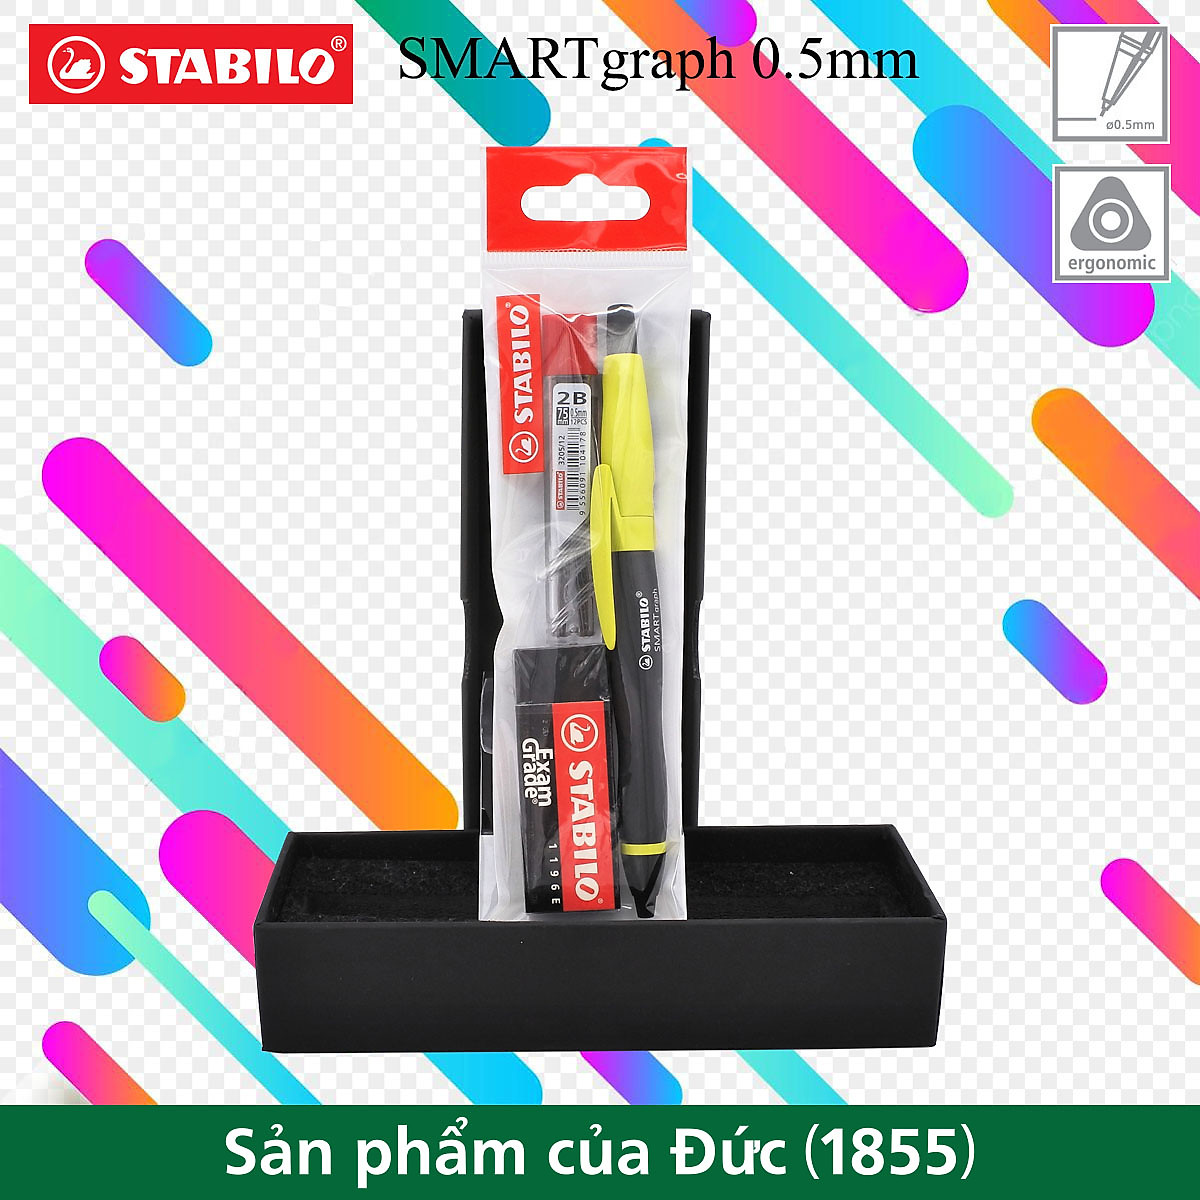 Mua Bộ bút chì bấm STABILO SMARTgraph 0.5mm - Bộ 1 bút chì màu xanh lá +  Tuýp 12 ruột chì + Gôm tẩy ER196E (MPE1842S-GN+) tại THÁI Á STORE | Tiki